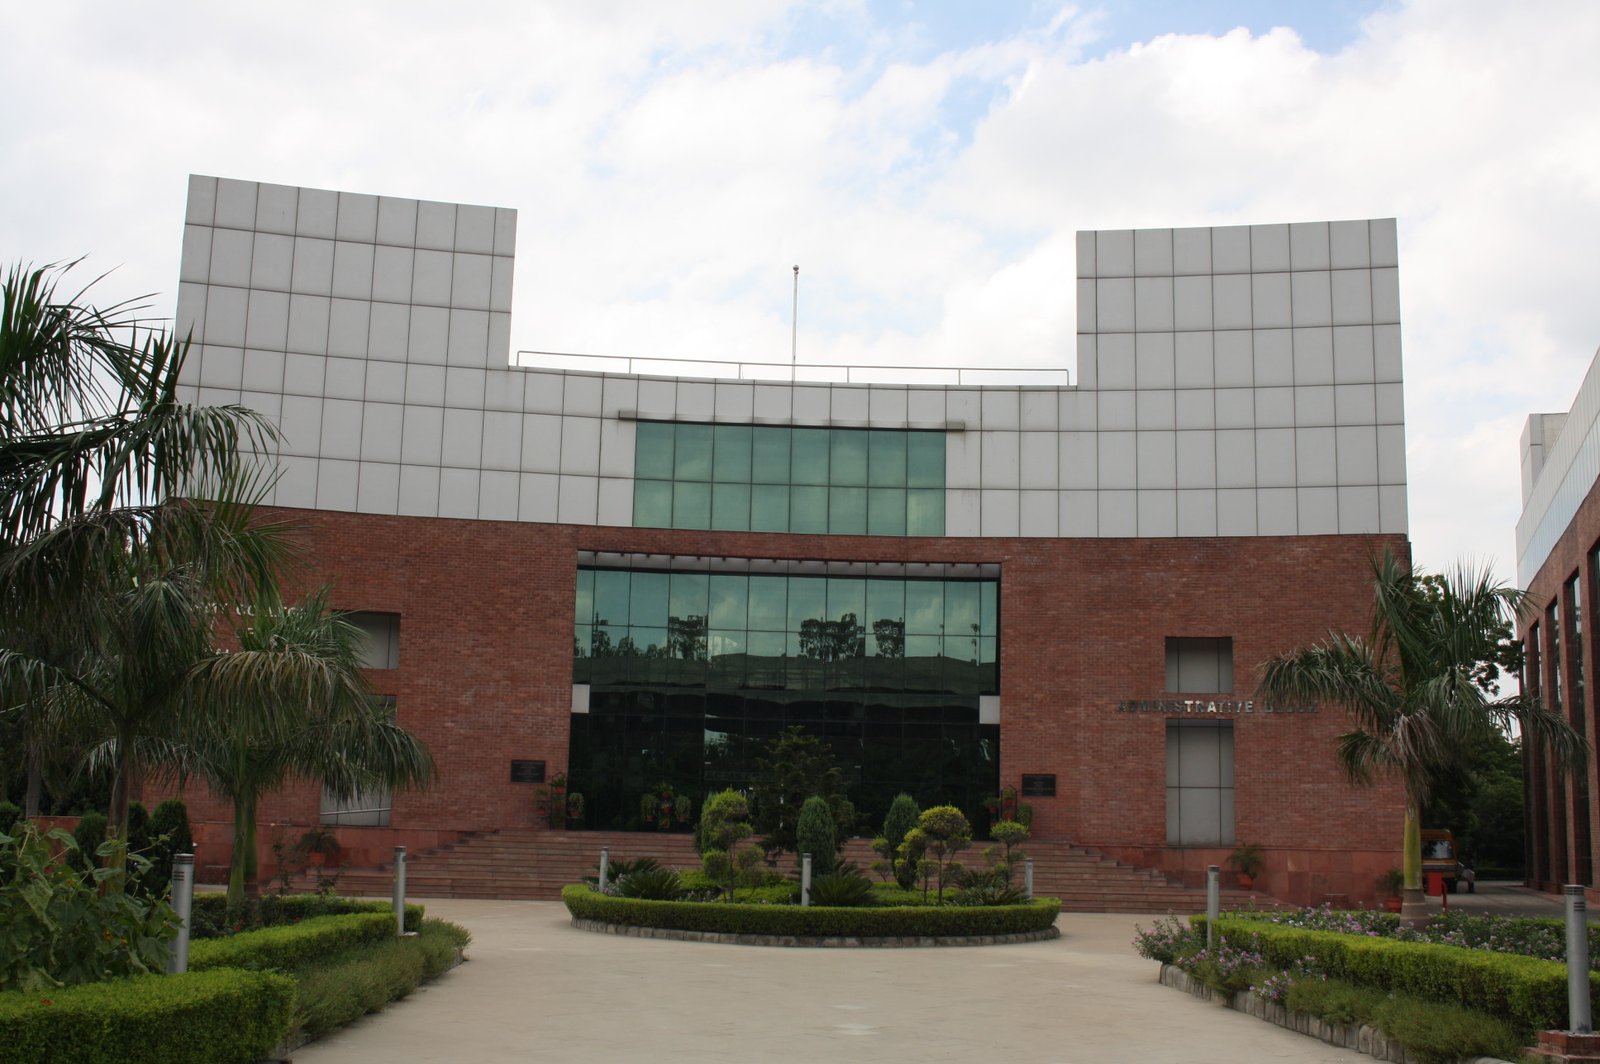 Army College of Medical Sciences Delhi